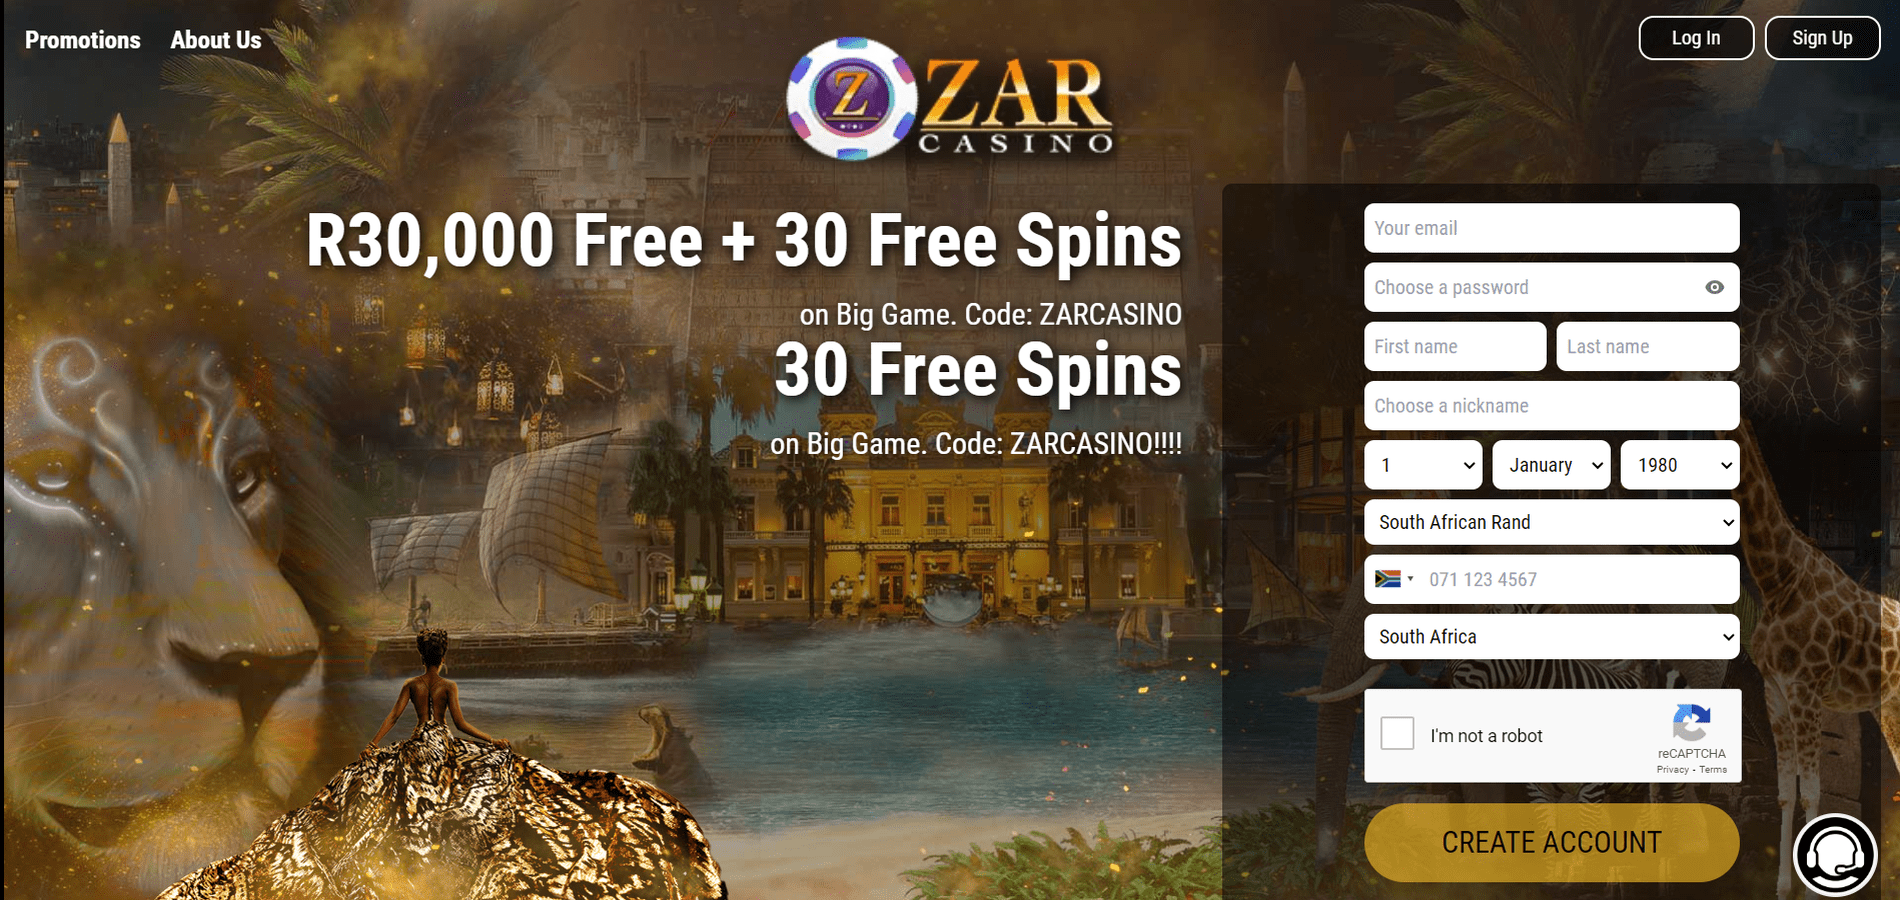 zar casino mobile app